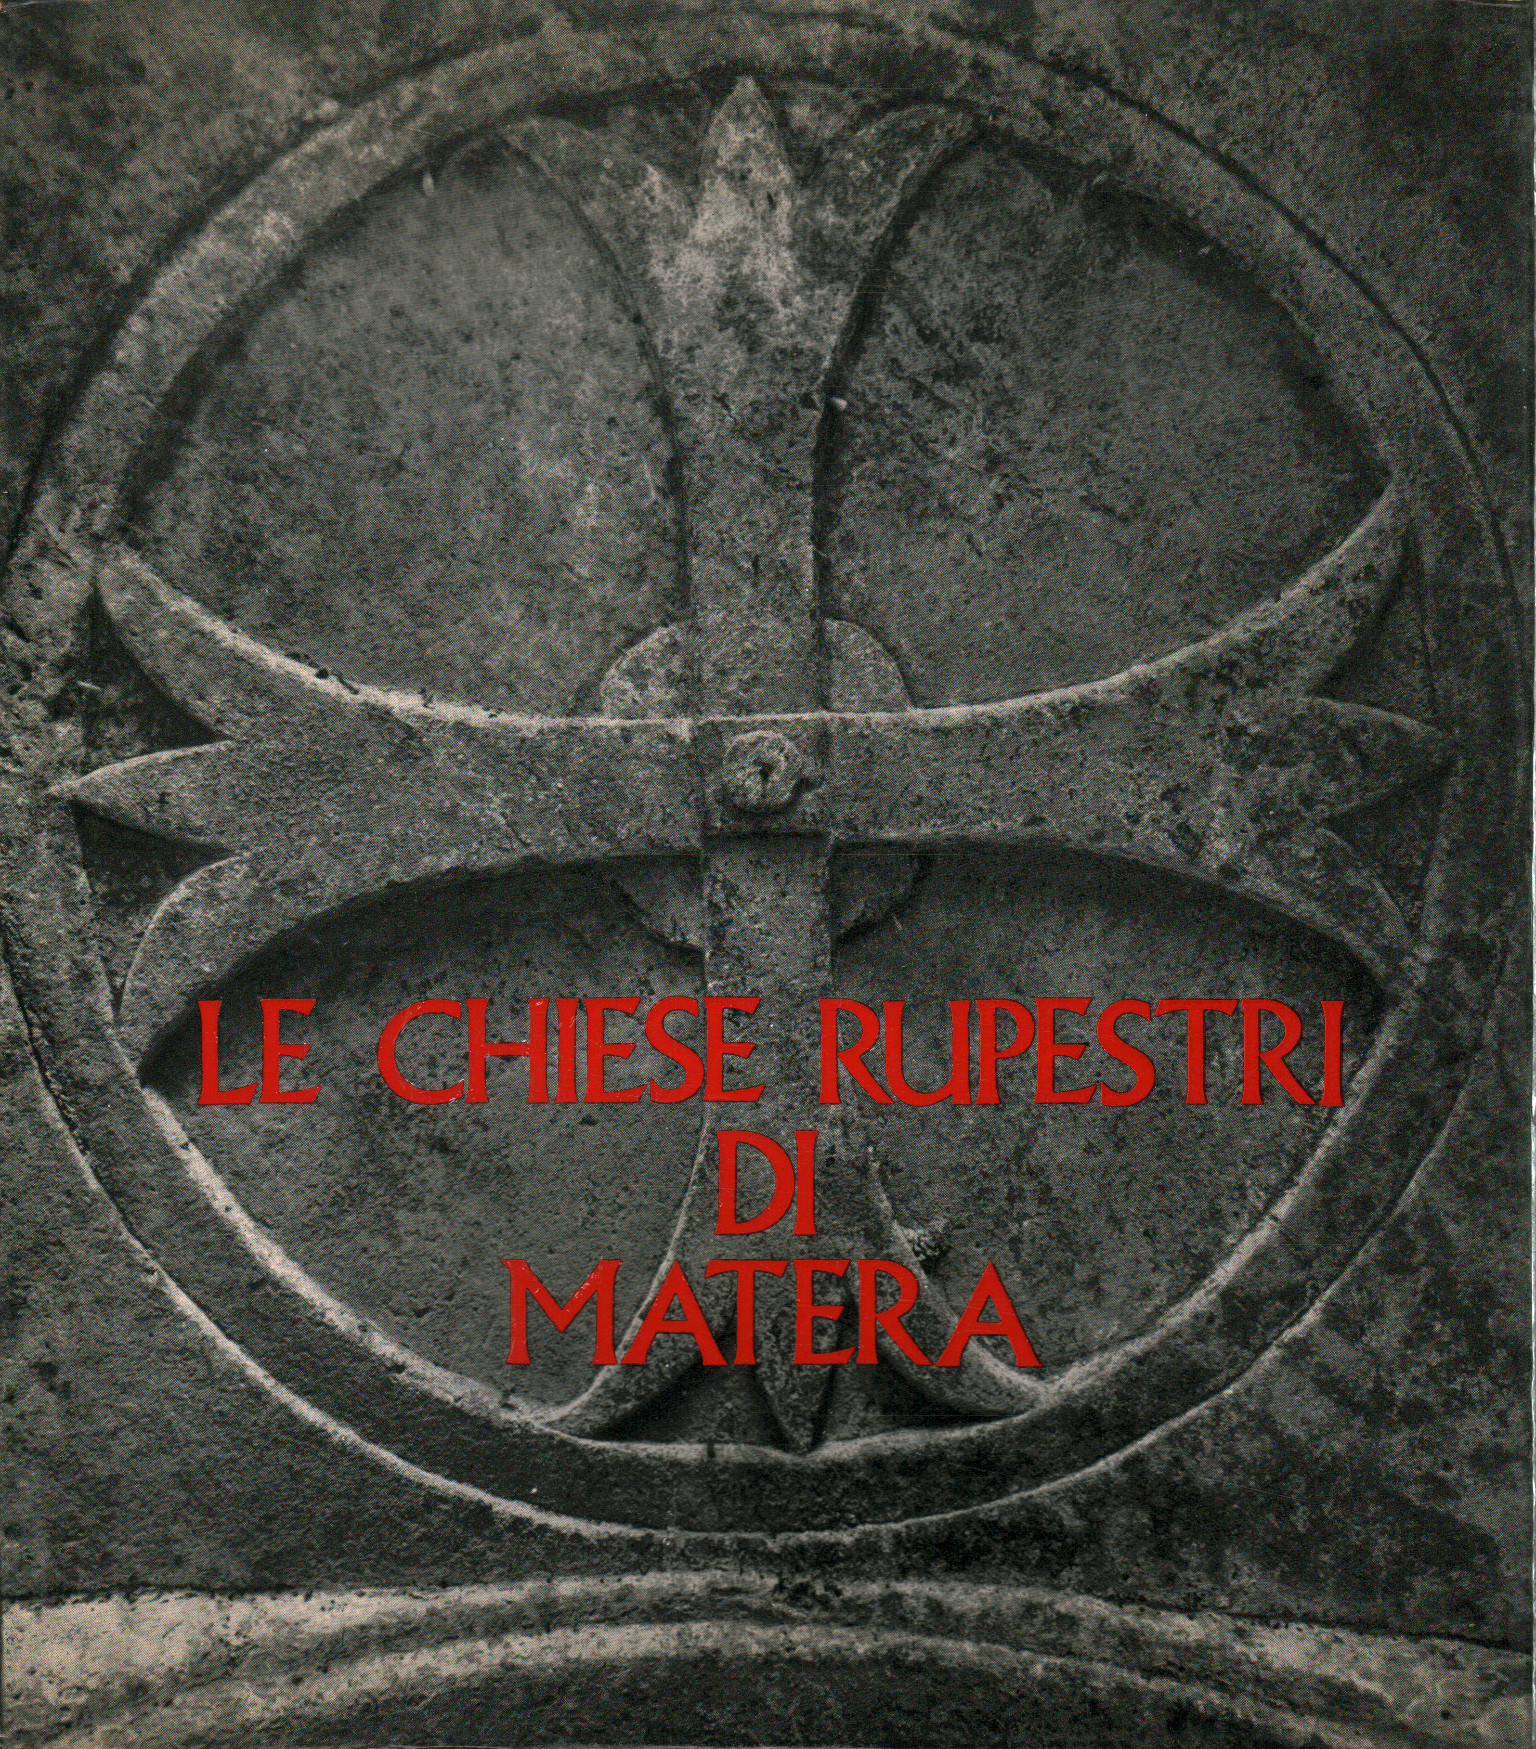 Les églises rupestres de Matera